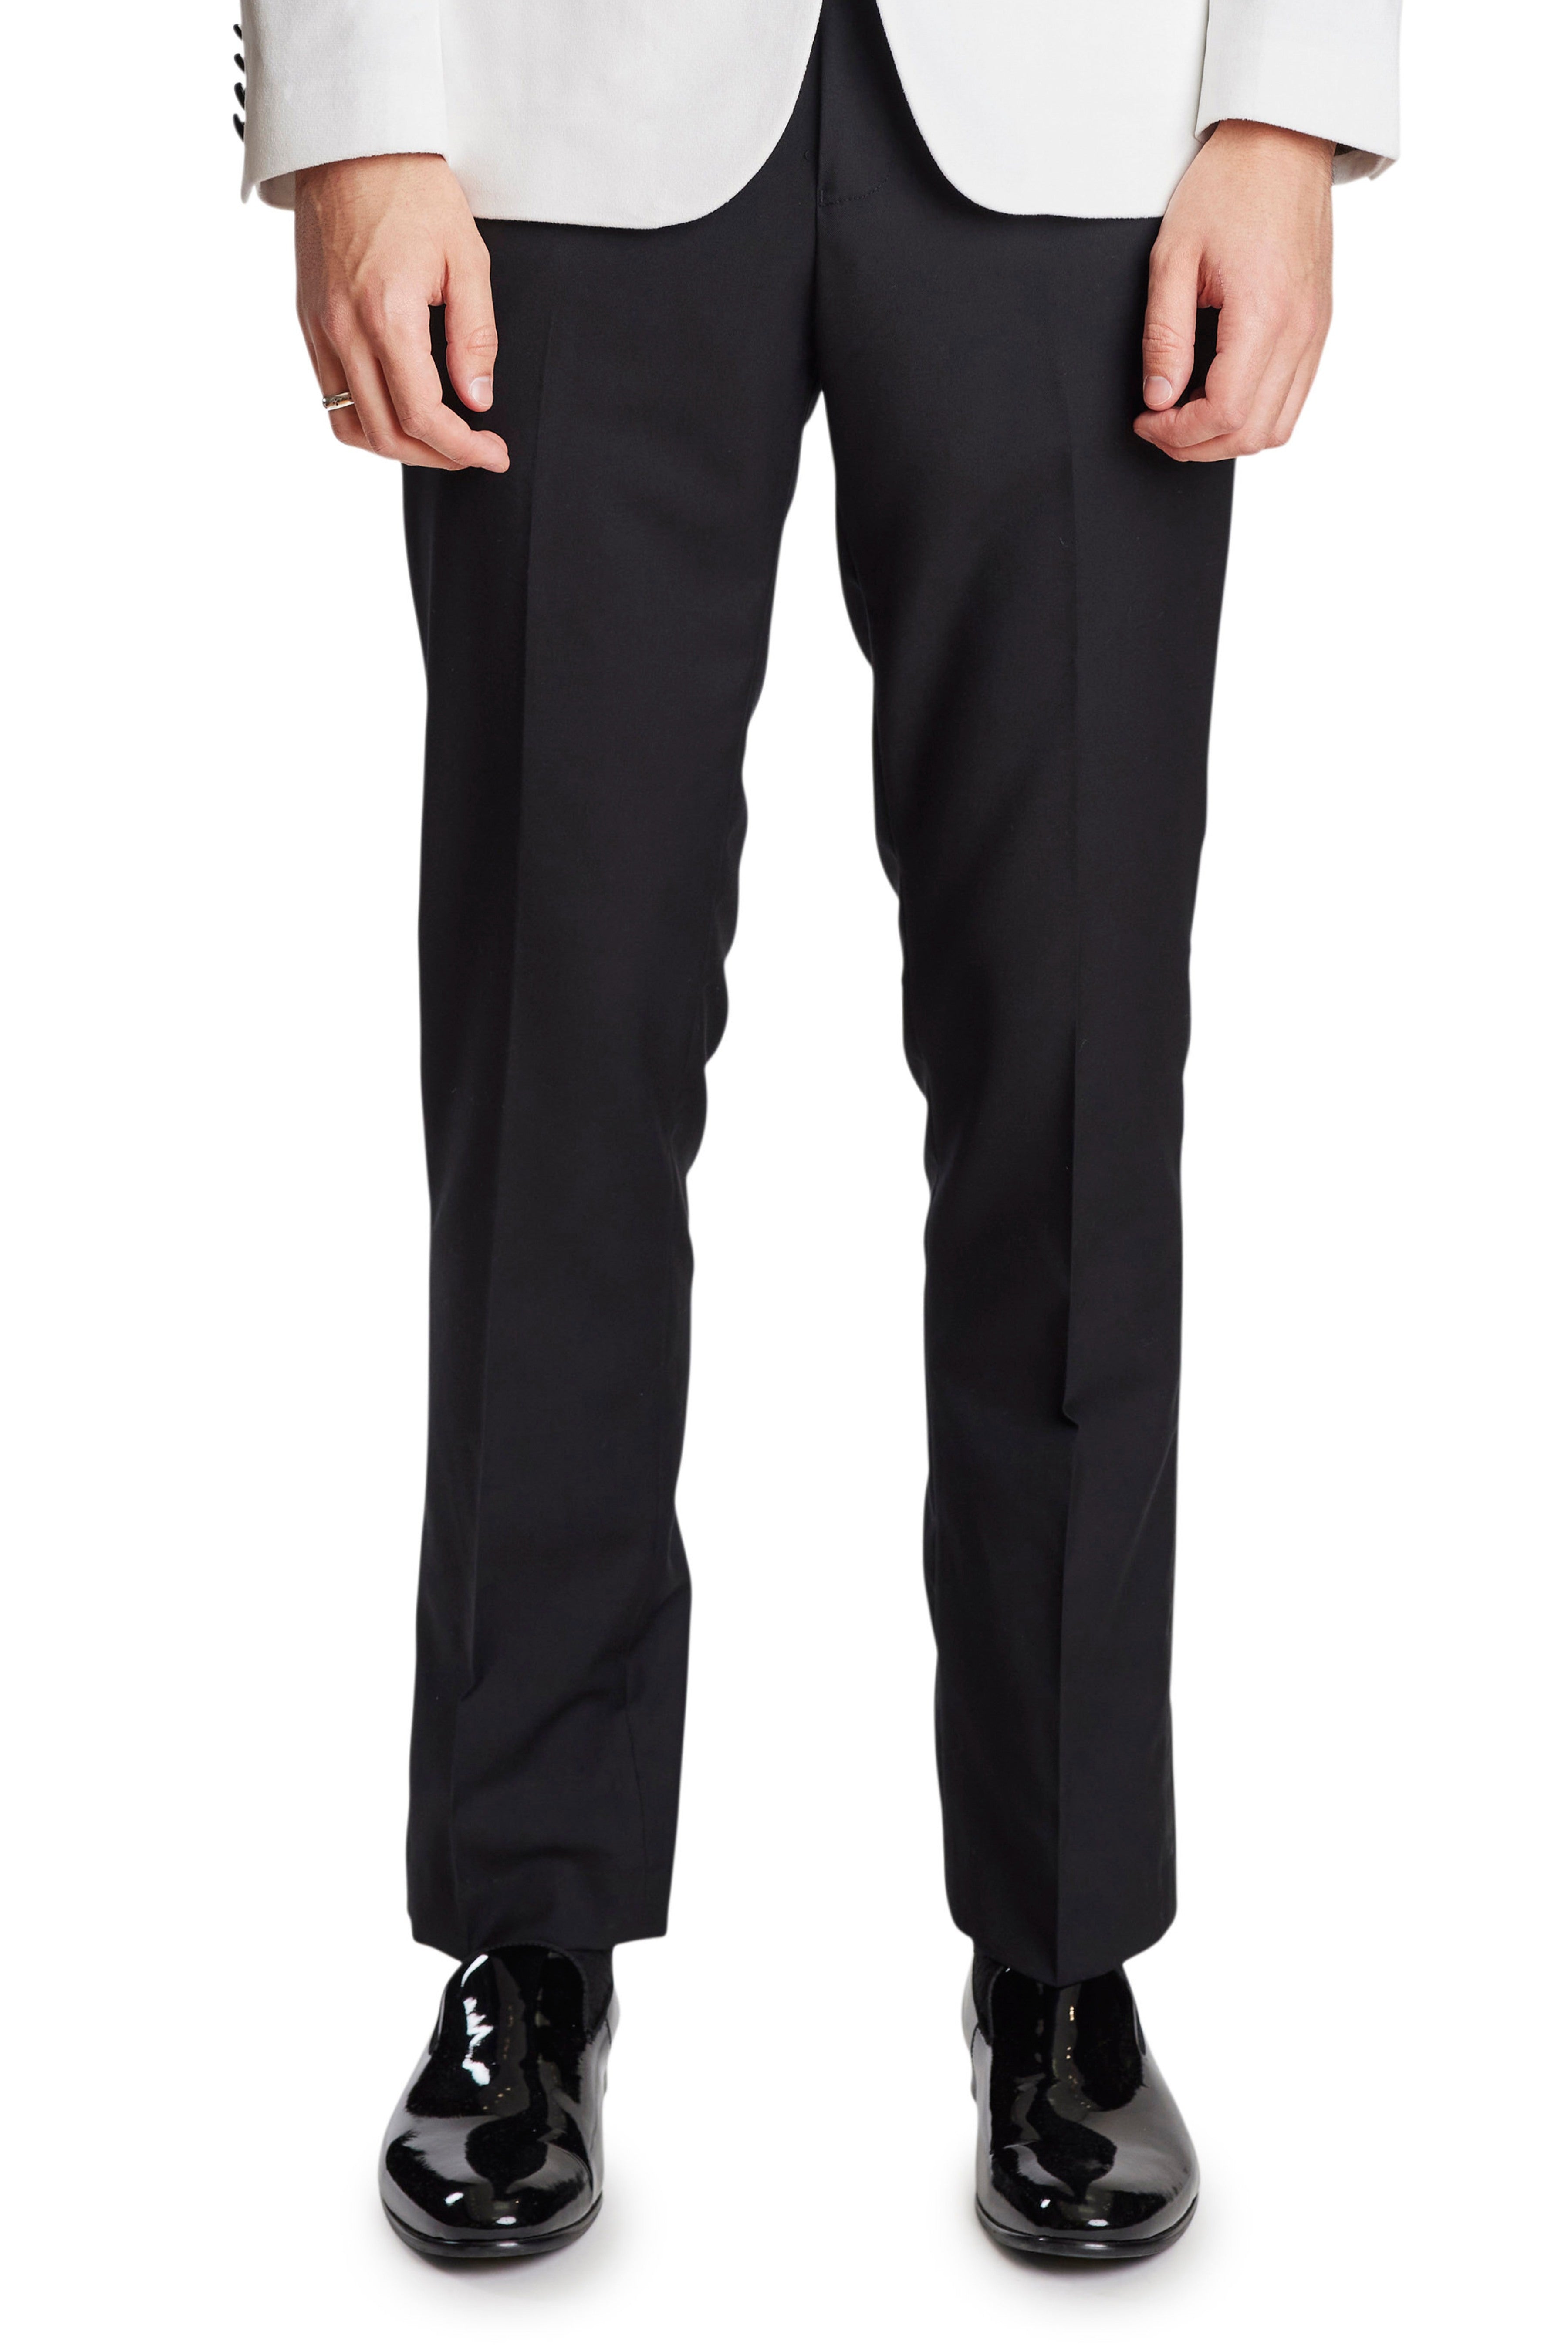 Tech Slim Fit Black Suit Pants | Calvin Klein